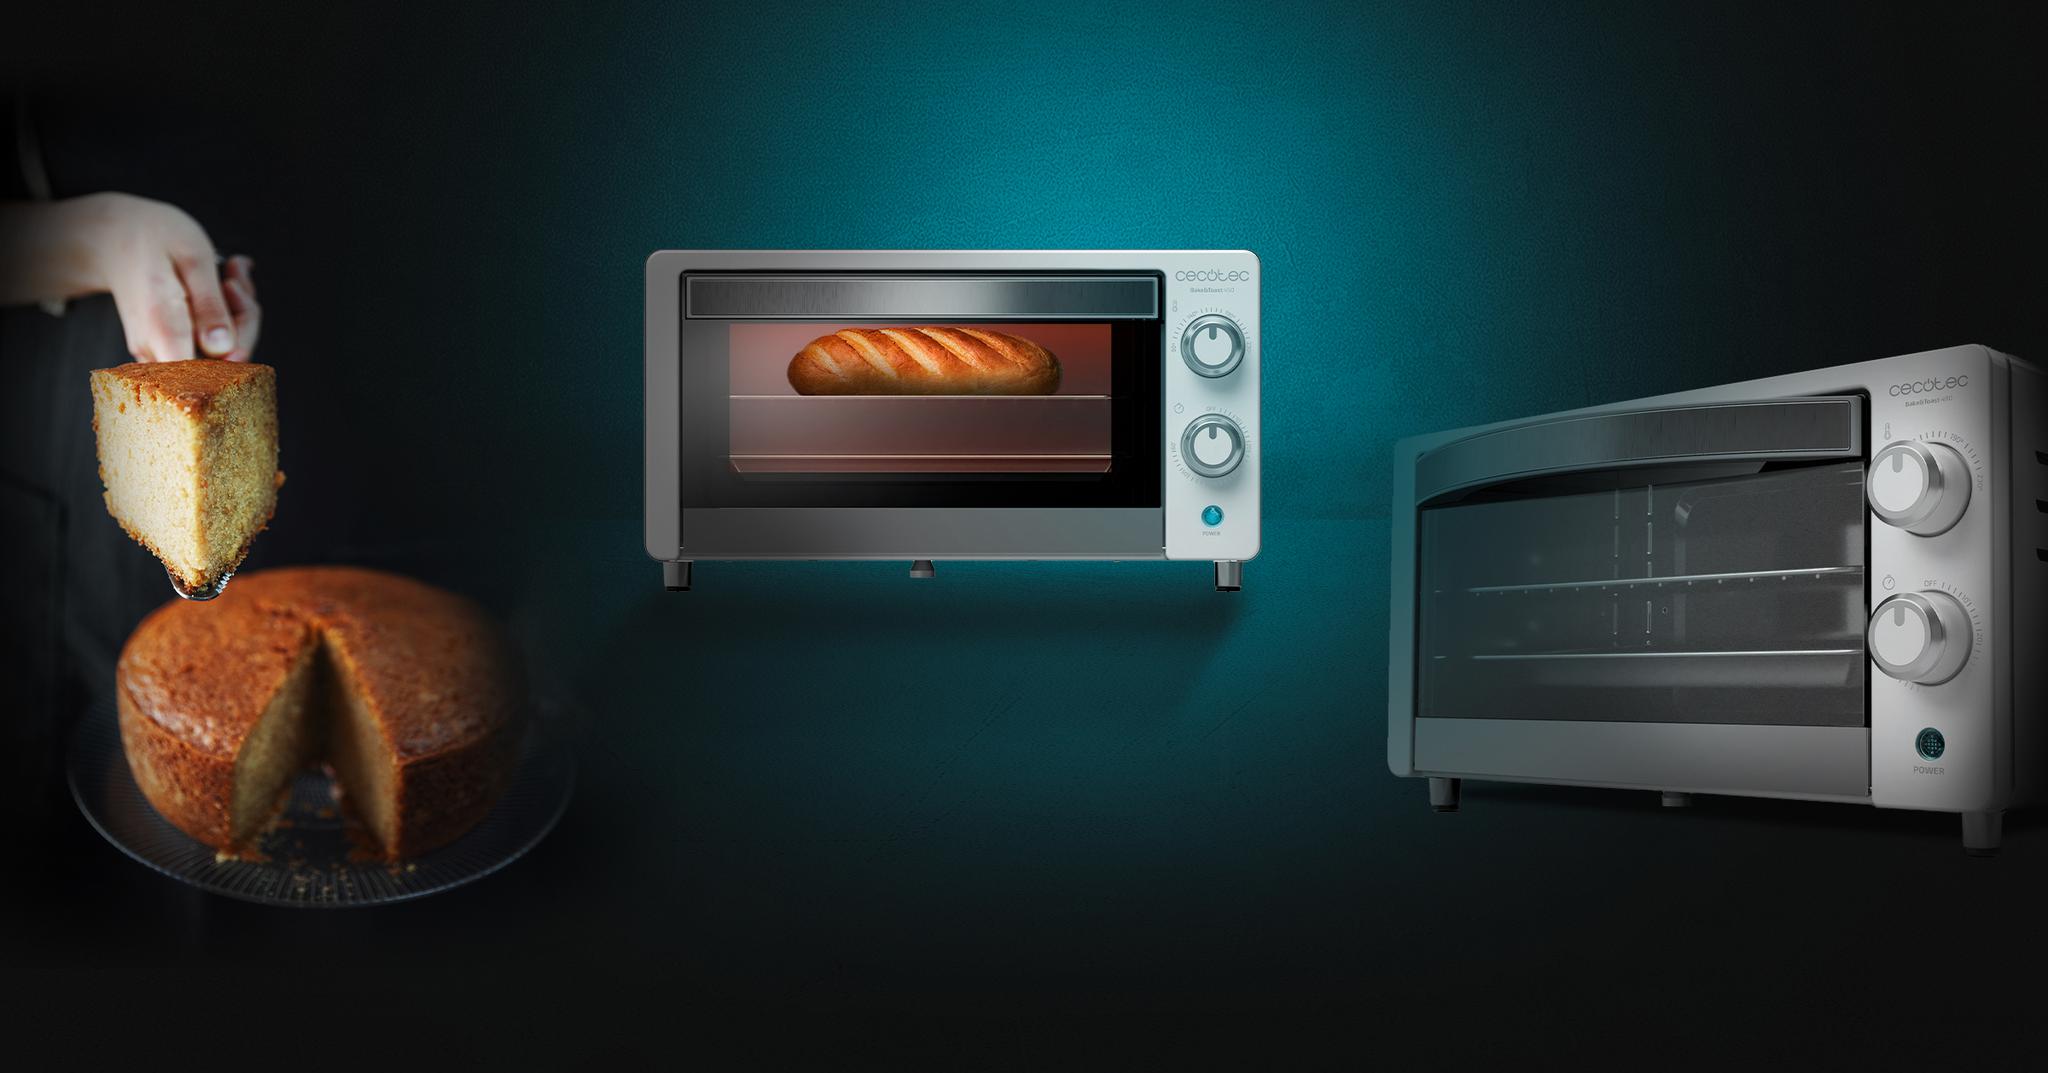 Immagine in primo piano del prodotto Bake&Toast 490